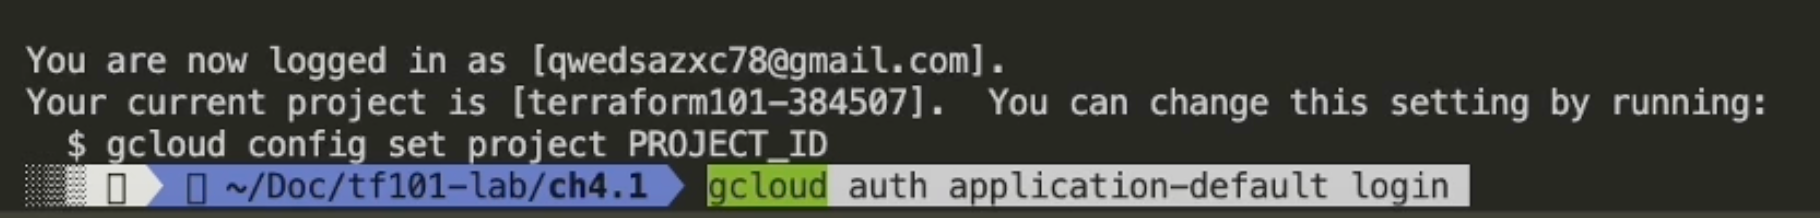 gcloud auth application-default login